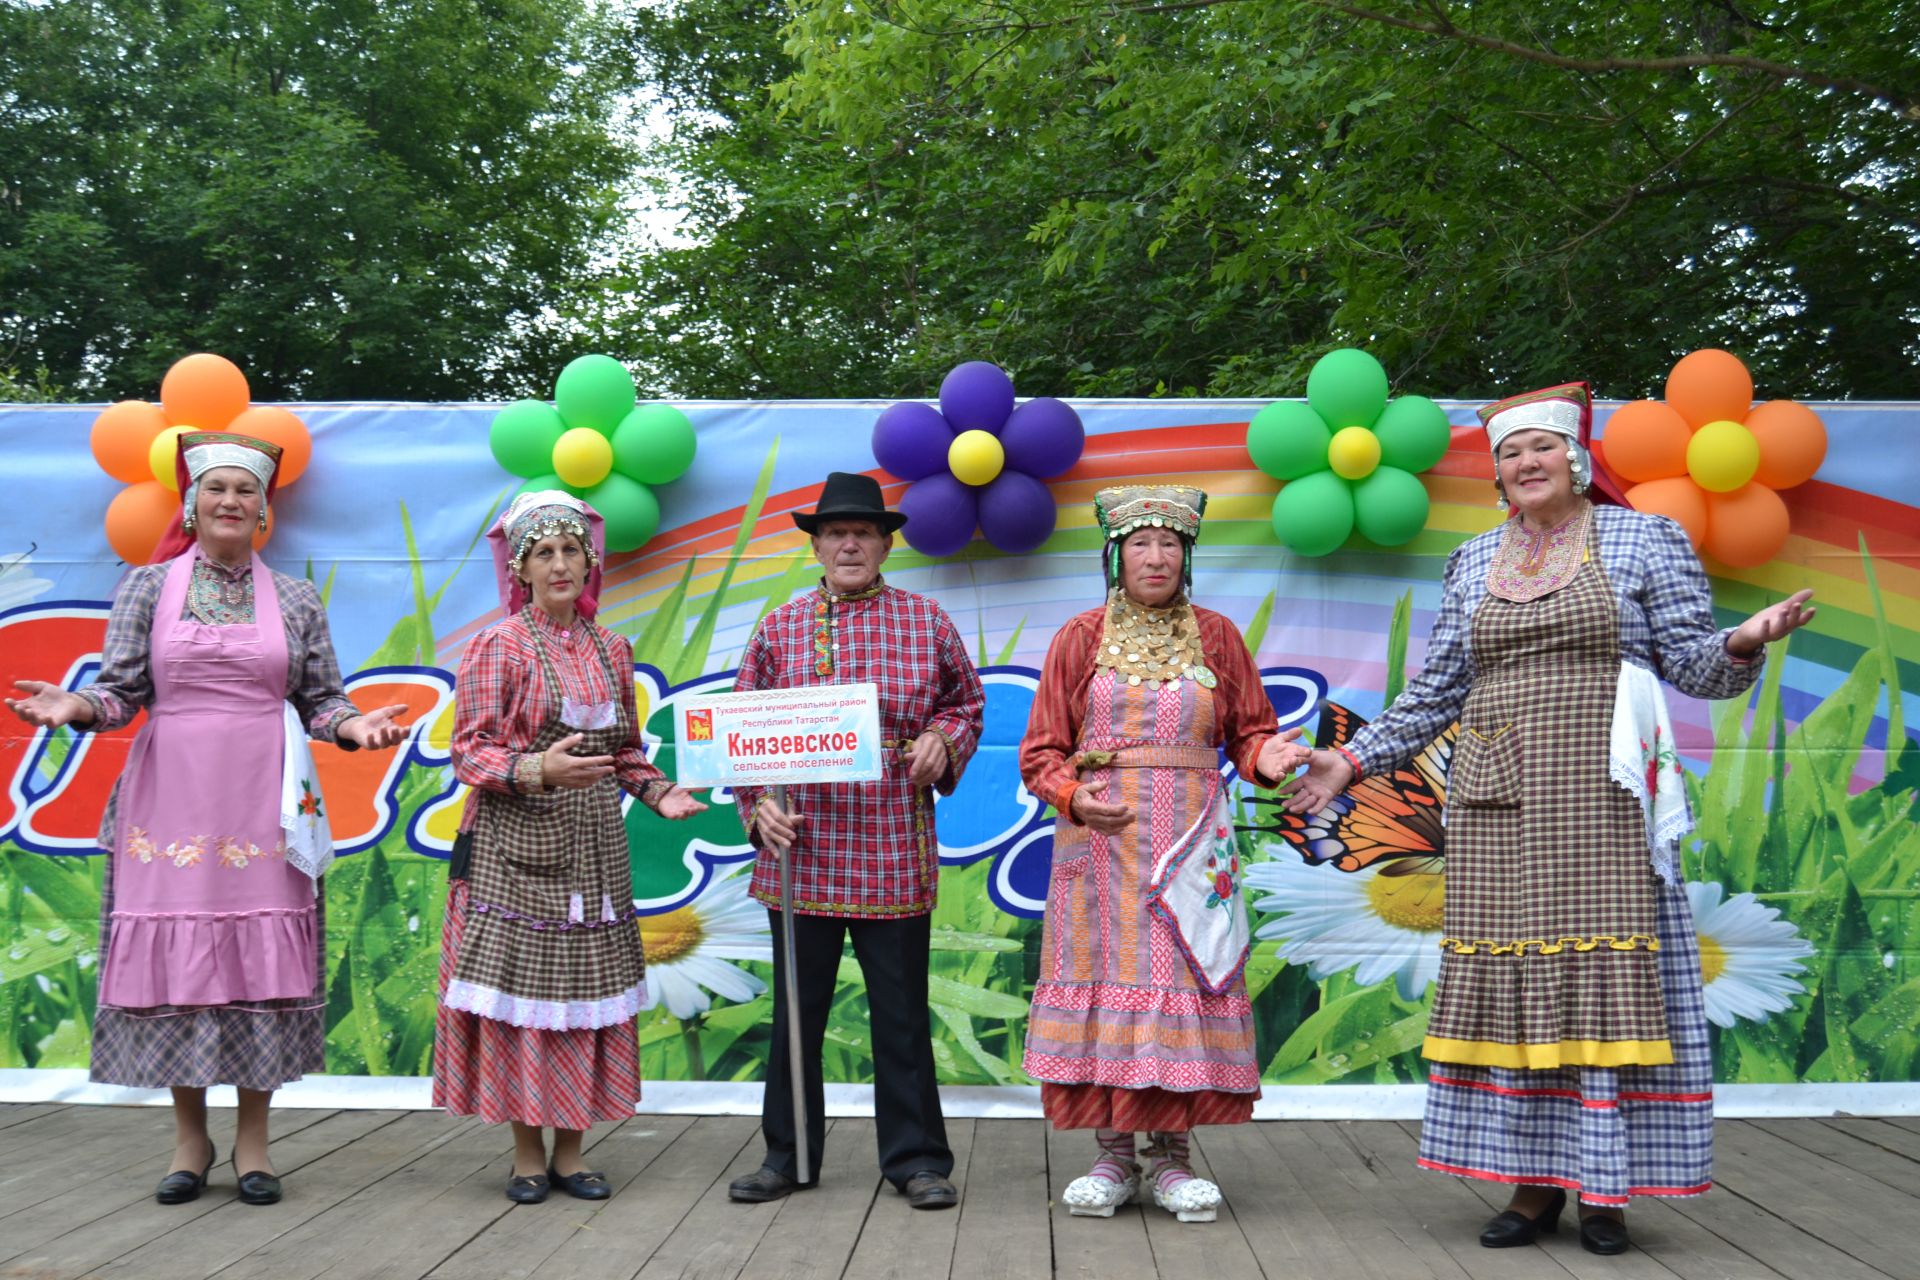 На празднике “Питрау” в Кашка-Тау Заинского района приняли участие  кряшенские фольклорные коллективы из близлежащих районов Республики